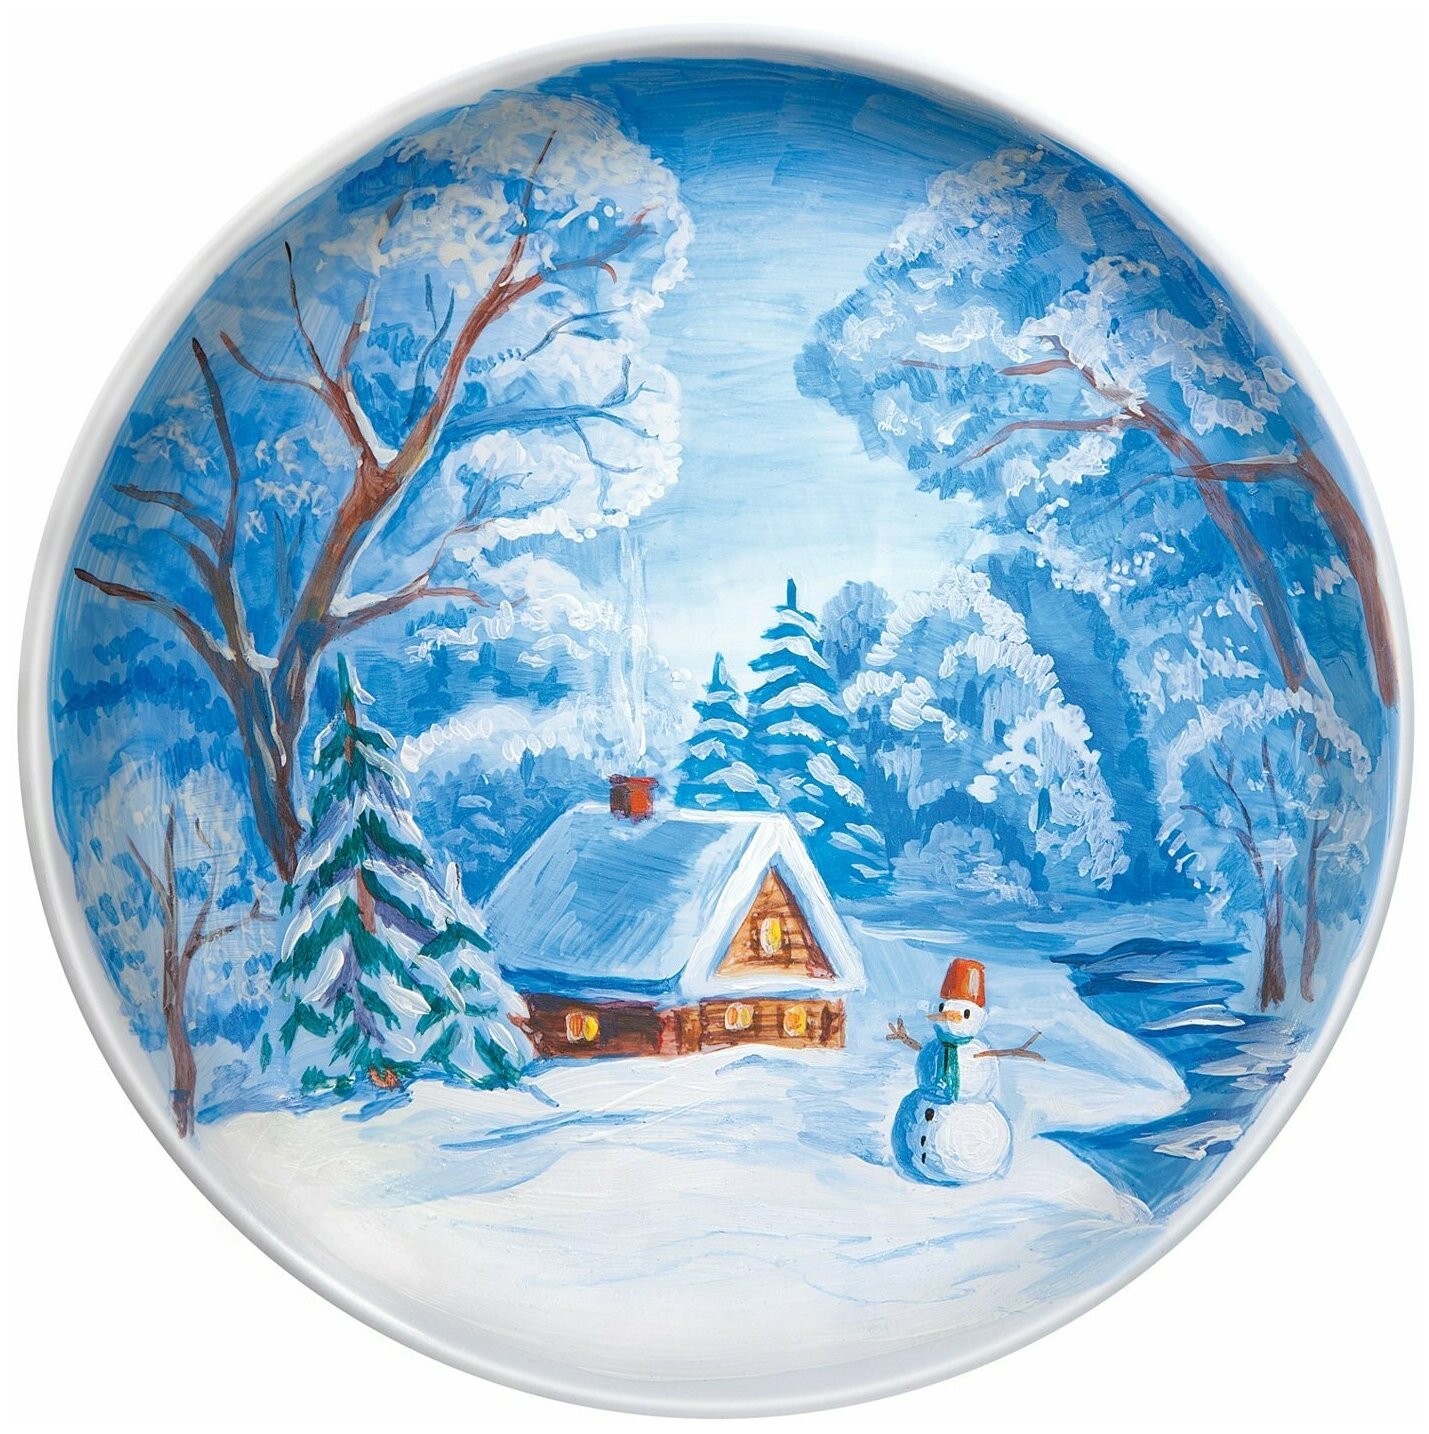 Роспись по тарелке "Зимняя сказка" (717027) - фото №5